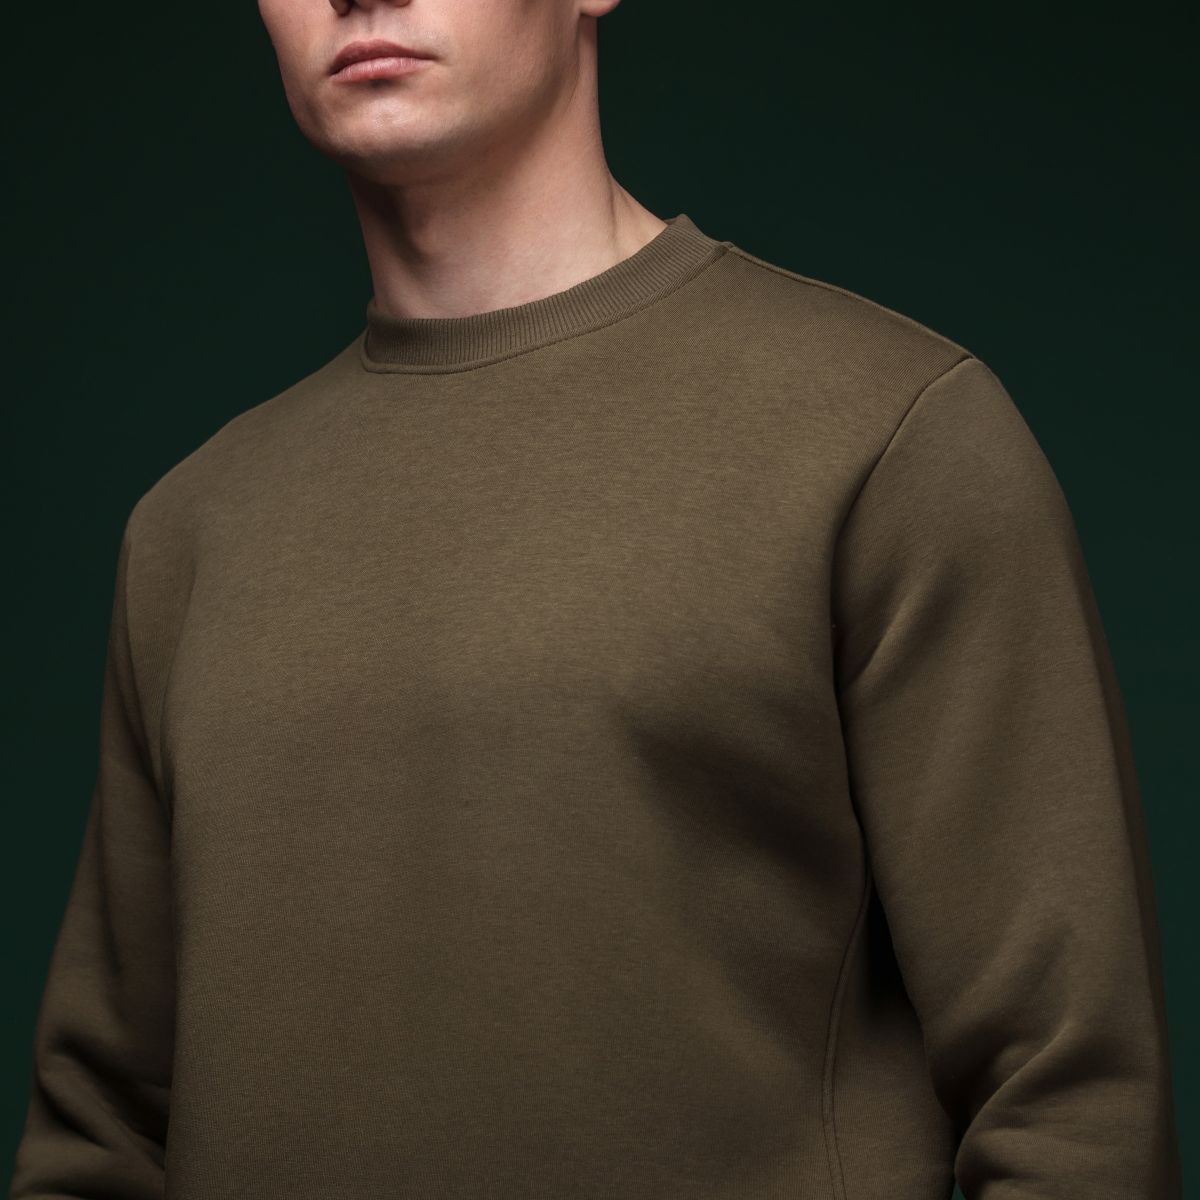 Світшот Base Soft Sweatshirt. Вільний стиль. Колір Олива/Olive. Розмір M 4